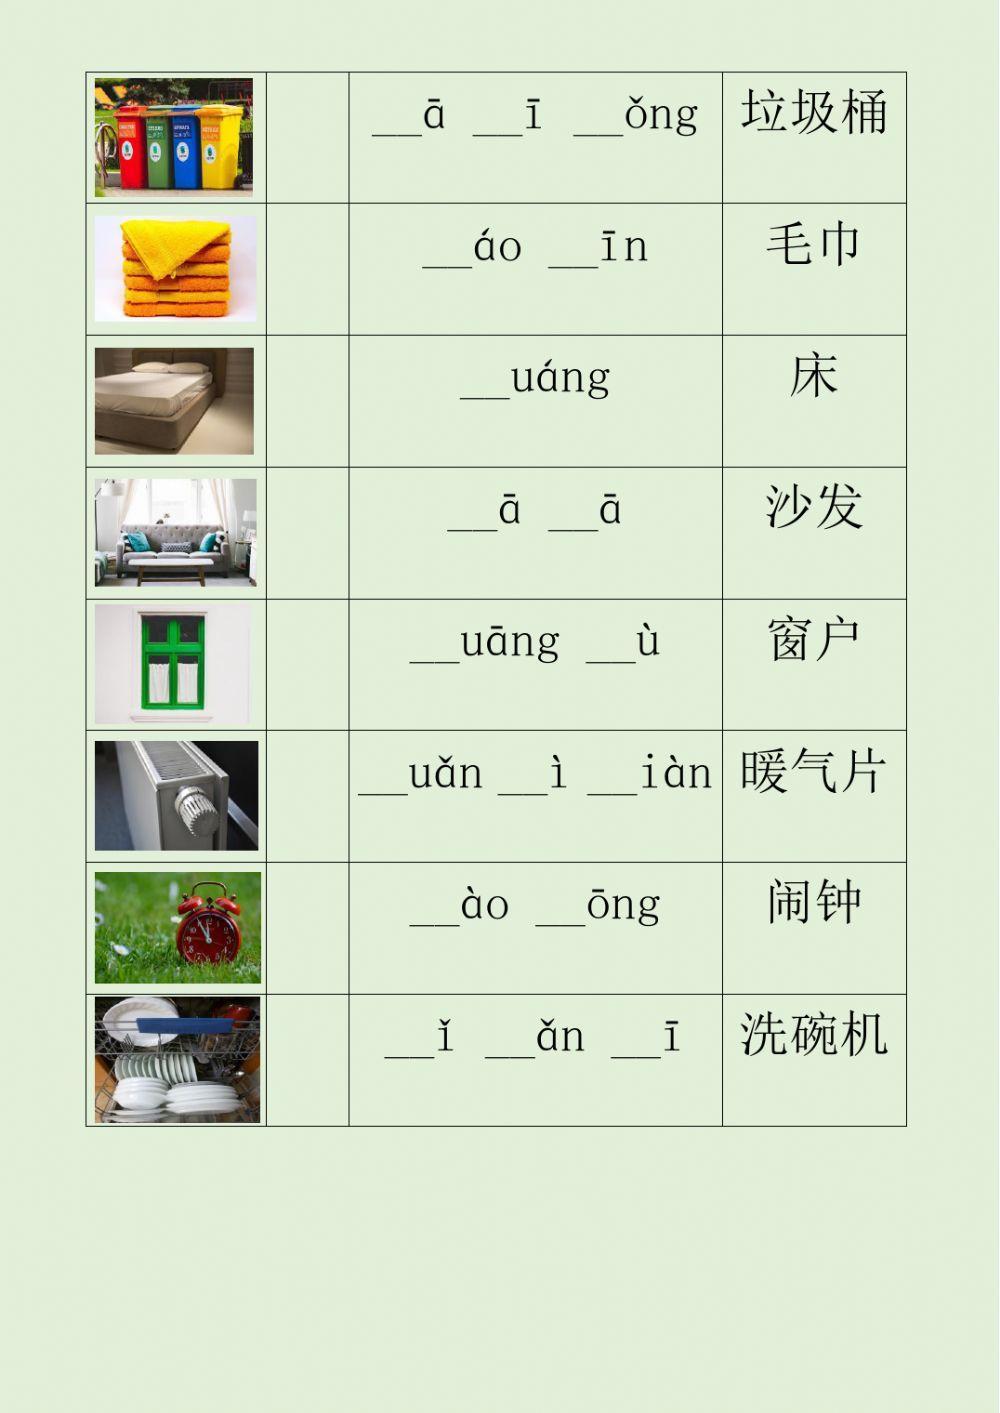 汉语 中文 拼音听力练习二  Chinese Pinyin Listening Practice 2